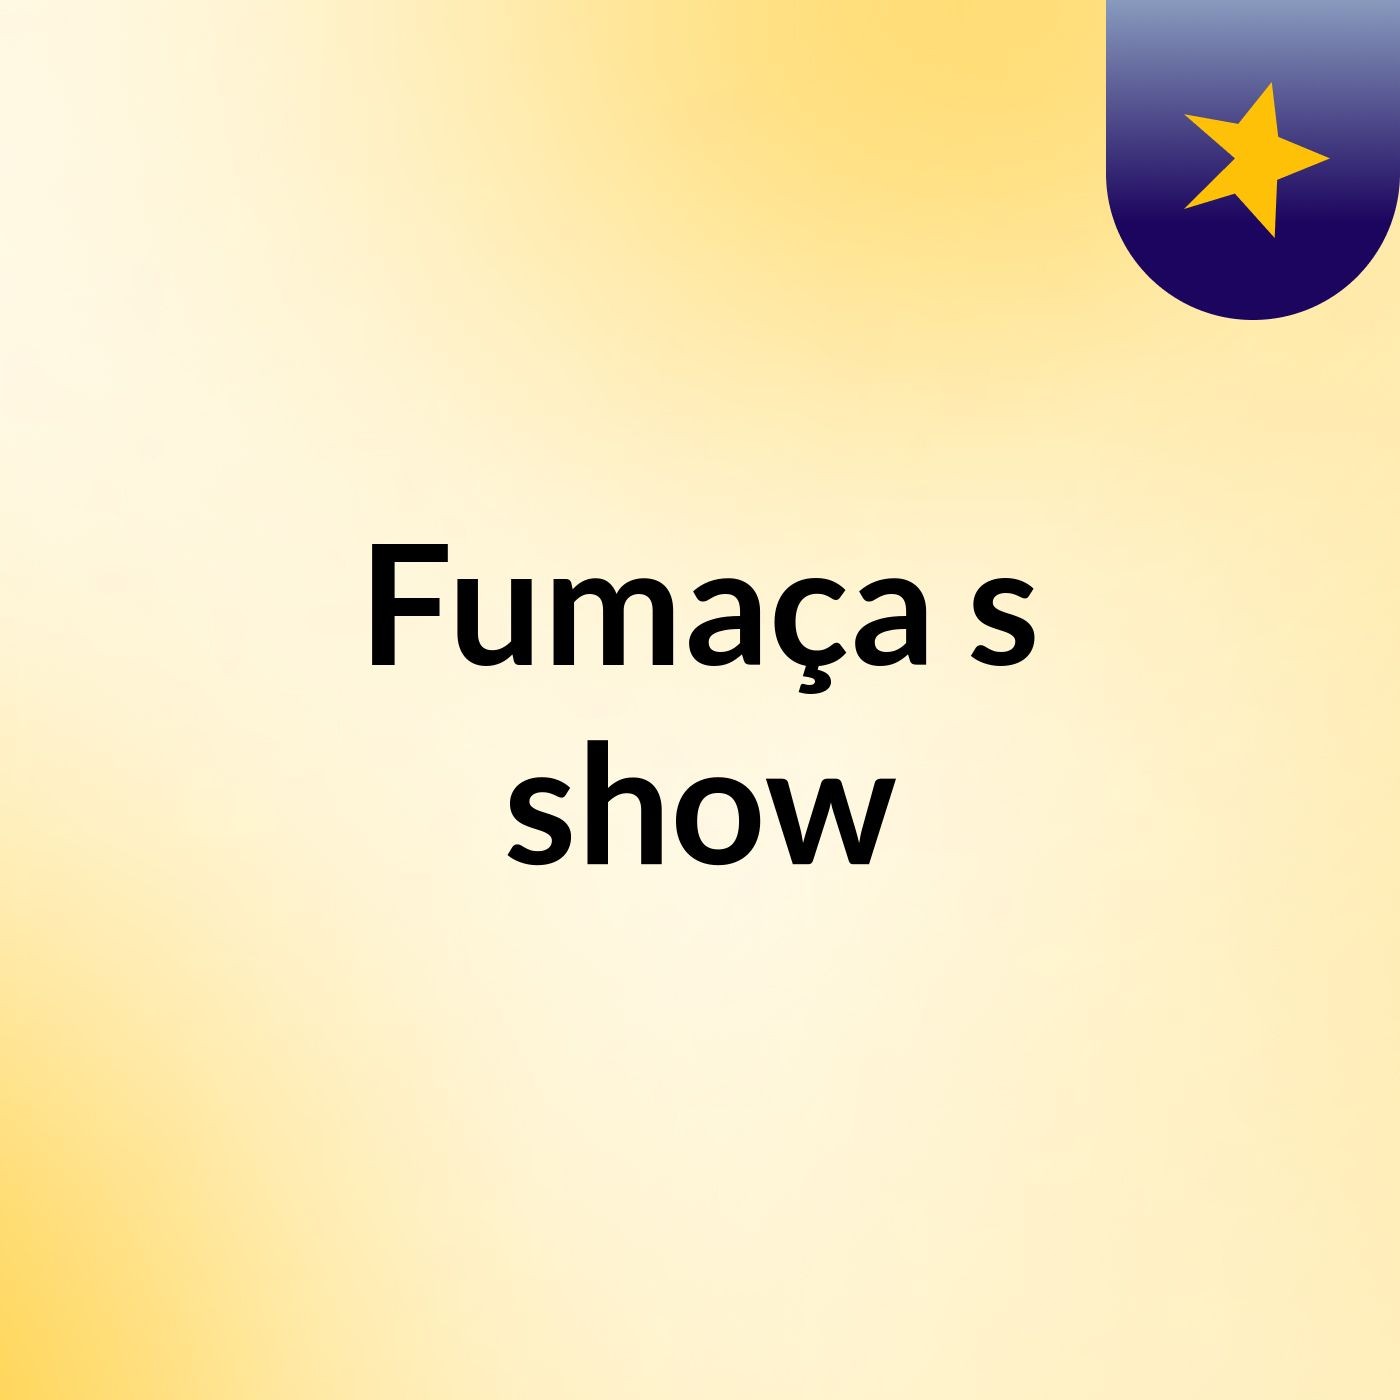 Fumaça's show